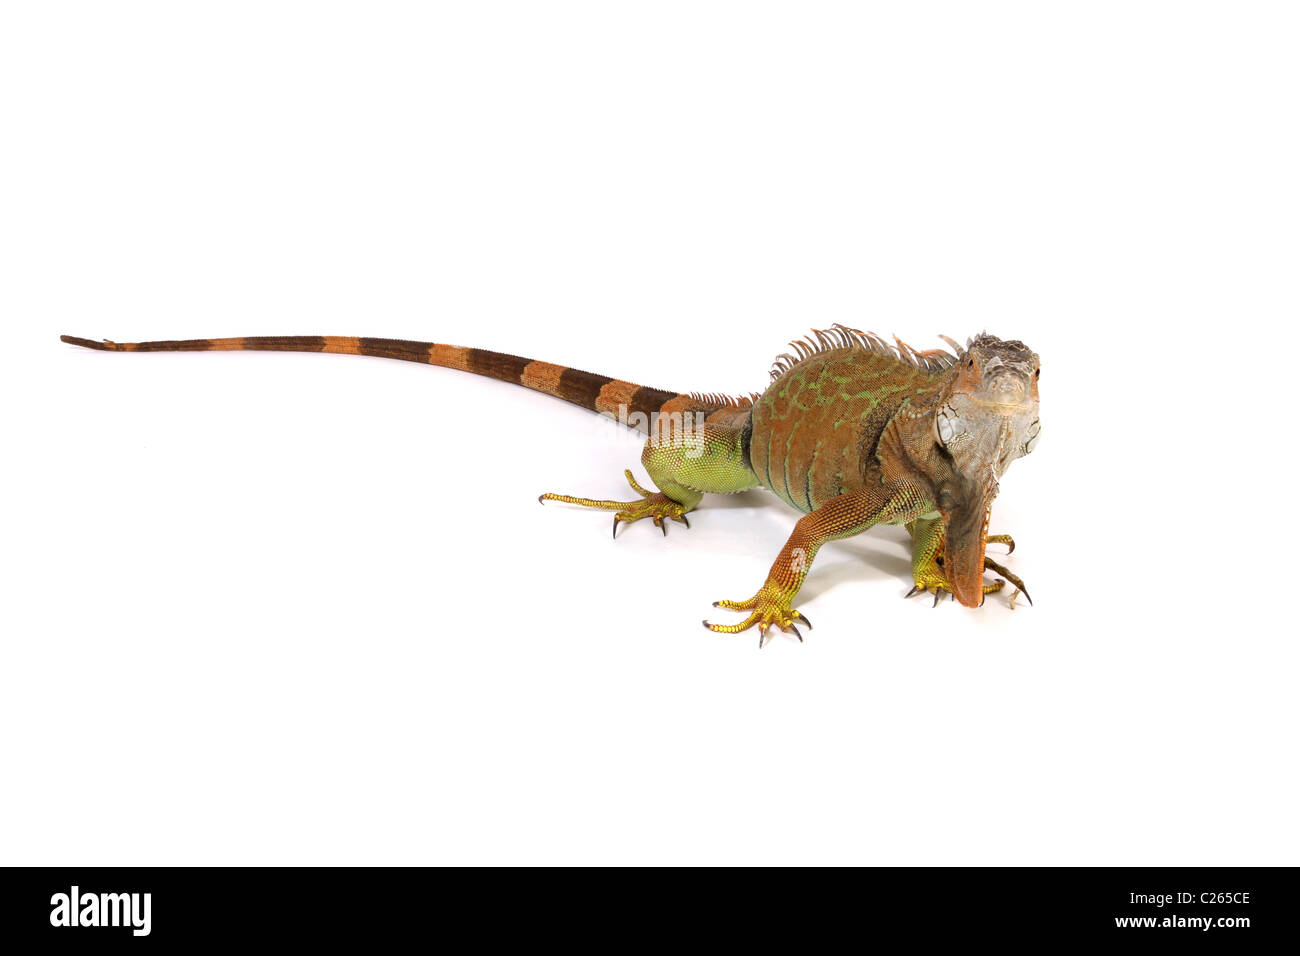 Un estudio de fotografía de una iguana. Foto de stock